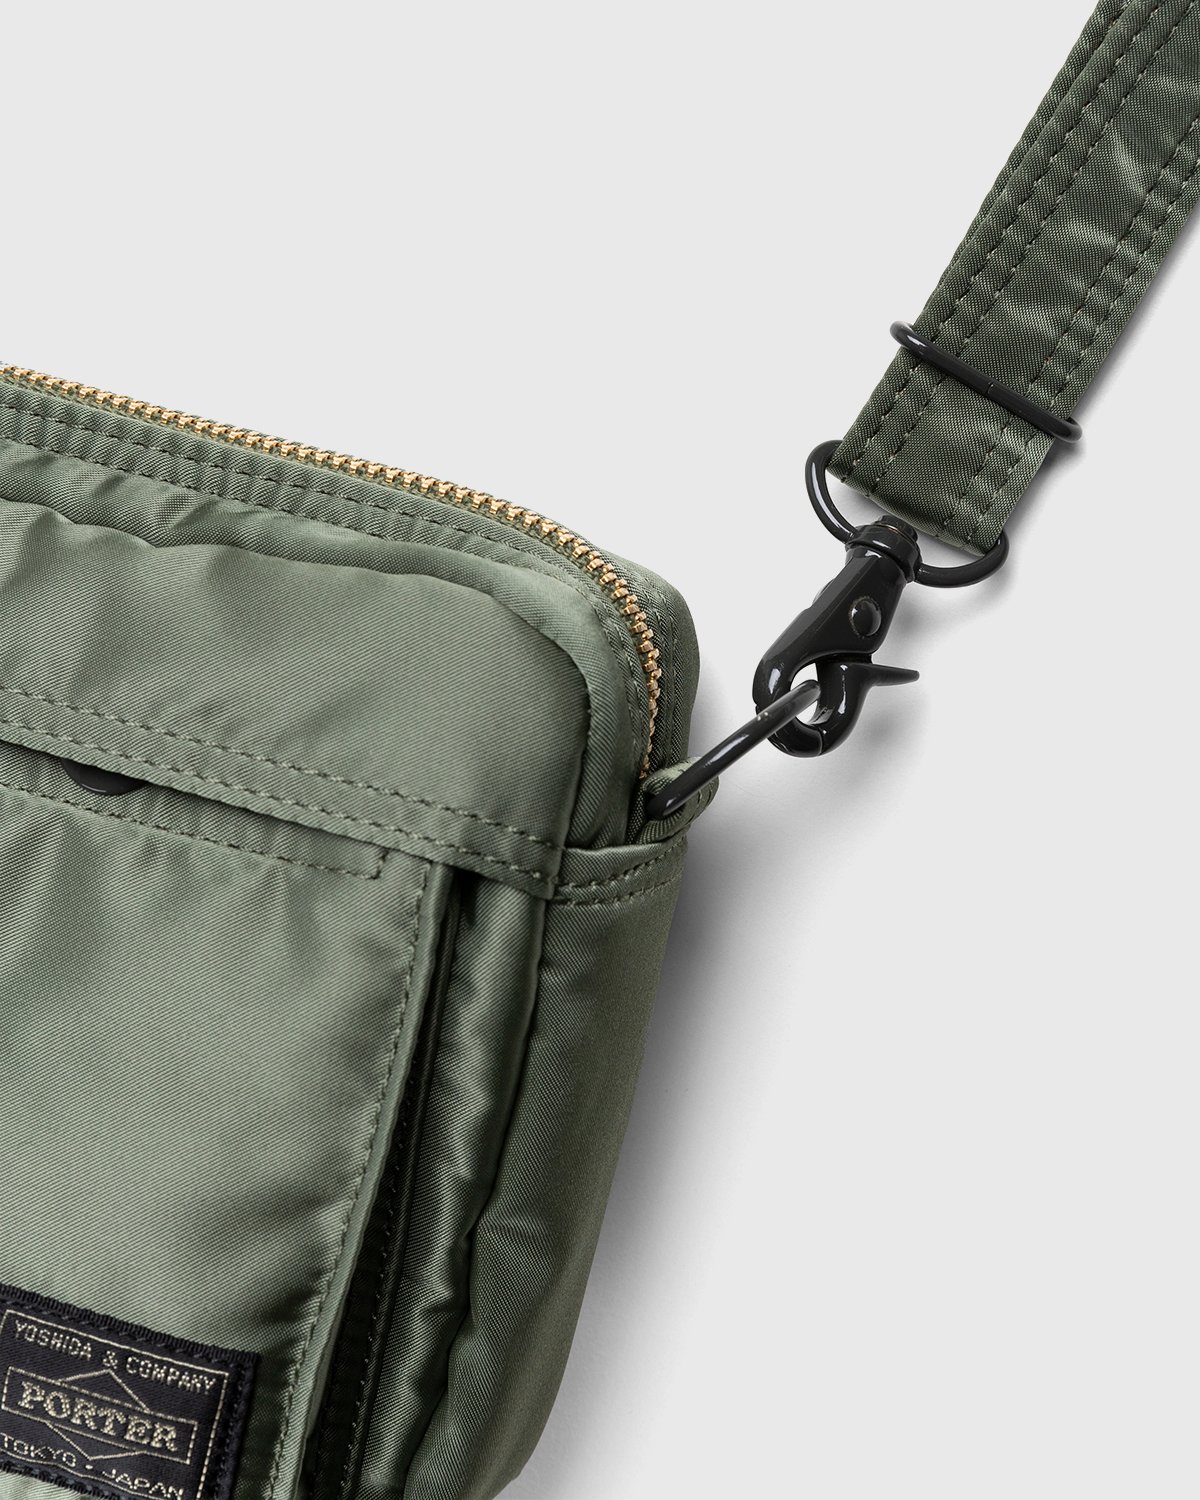 Porter-Yoshida & Co. - Tanker Shoulder Bag Sage Green - Accessories - Green - Image 3